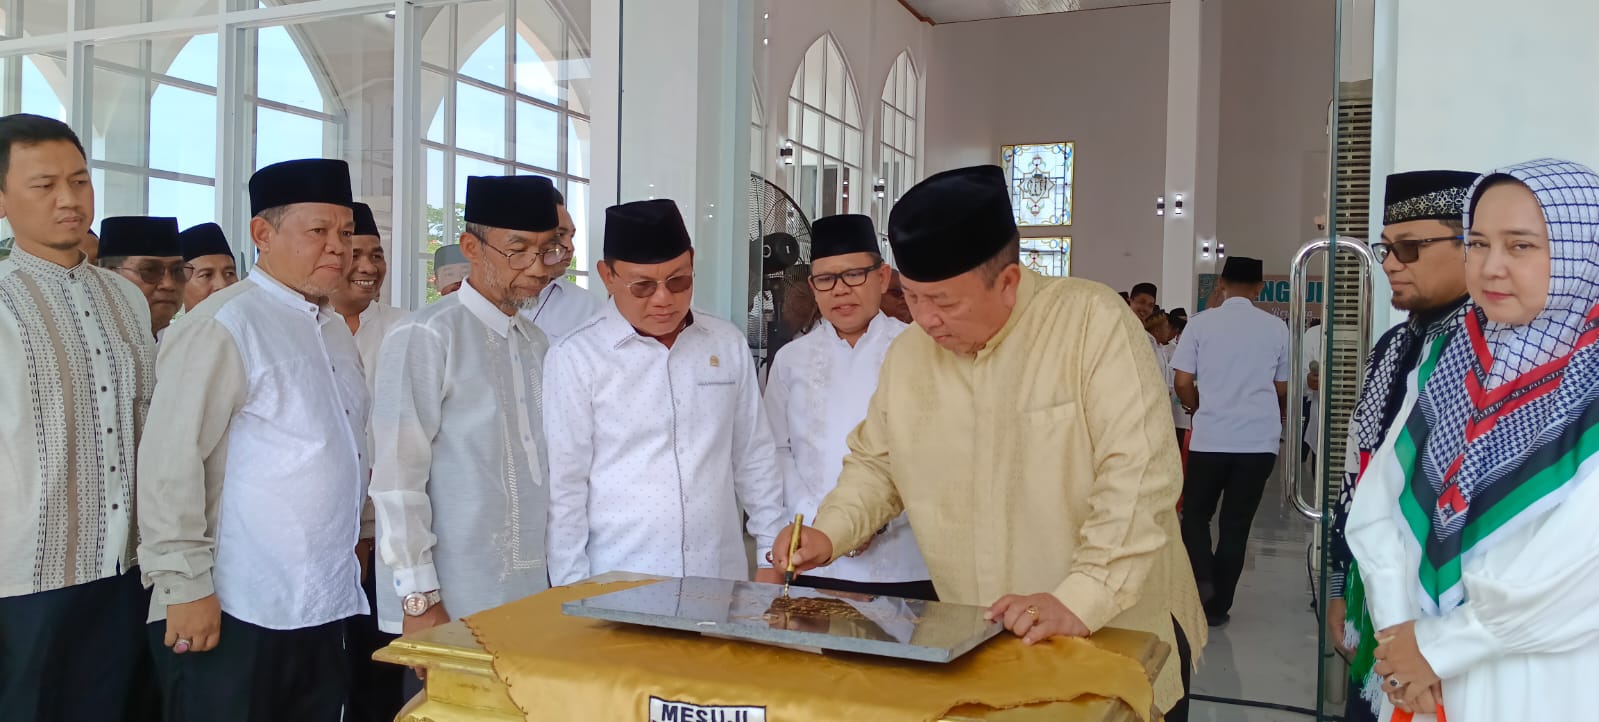 Gubernur Lampung Resmikan Masjid Al-Karim di Mesuji Sekaligus Membuka Pengajian Akbar Bersama Ustadz Wijayanto